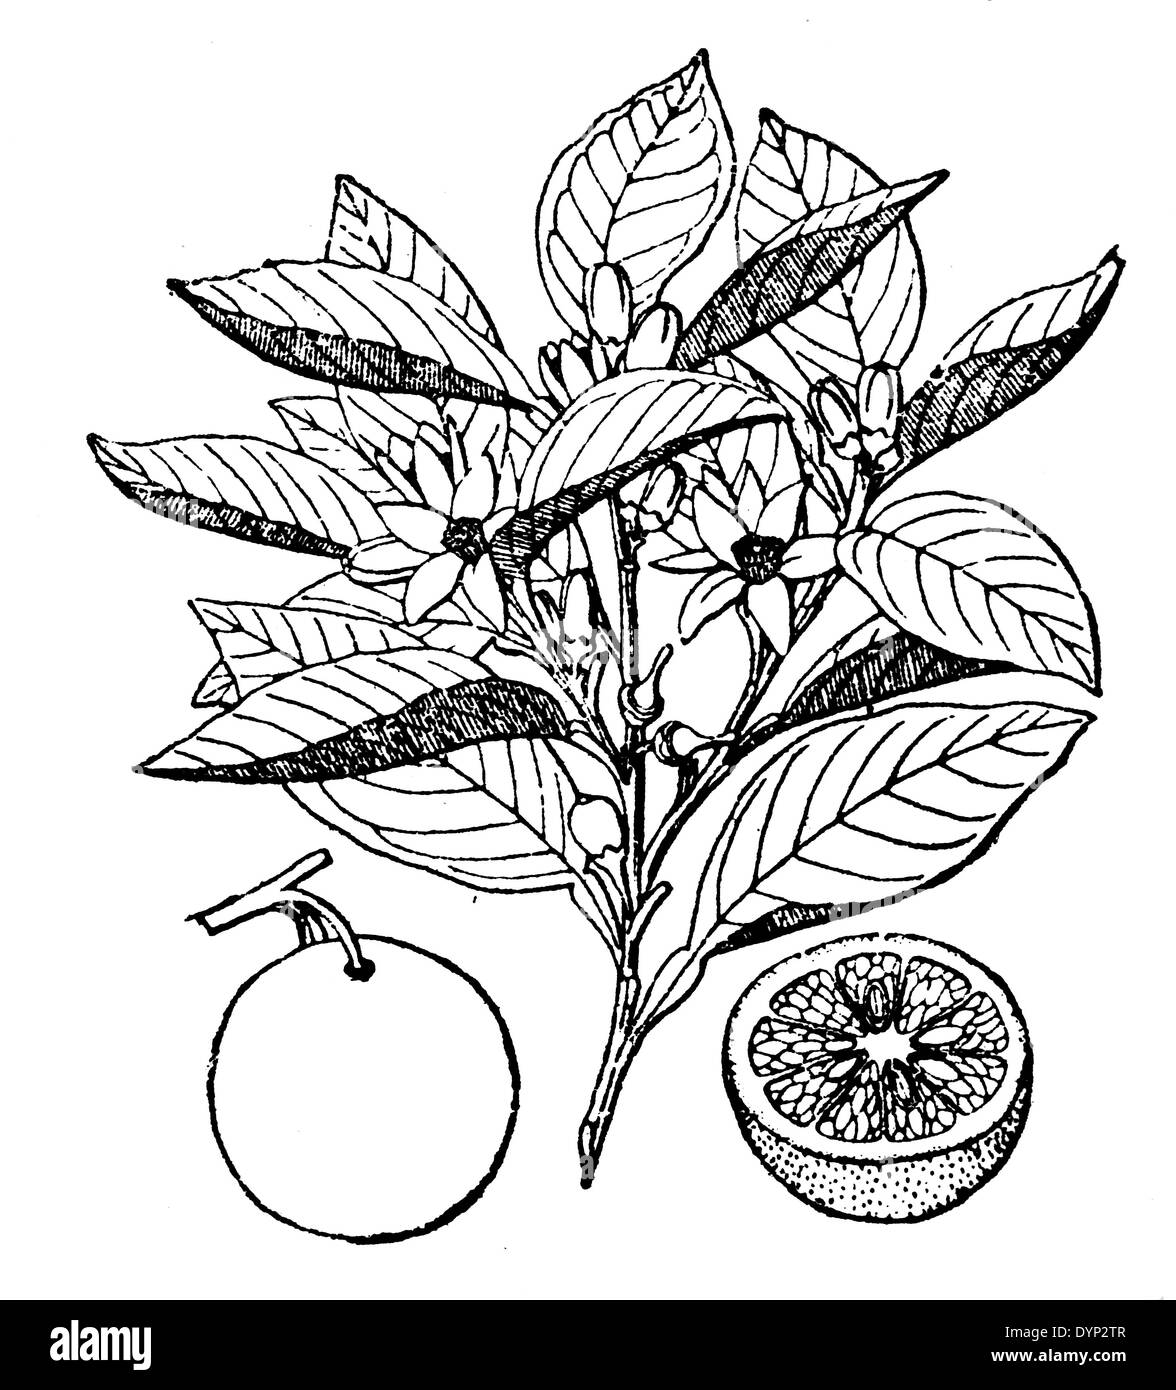 Orange (Citrus sinensis, Citrus aurantium), illustration from Soviet encyclopedia, 1926 Stock Photo